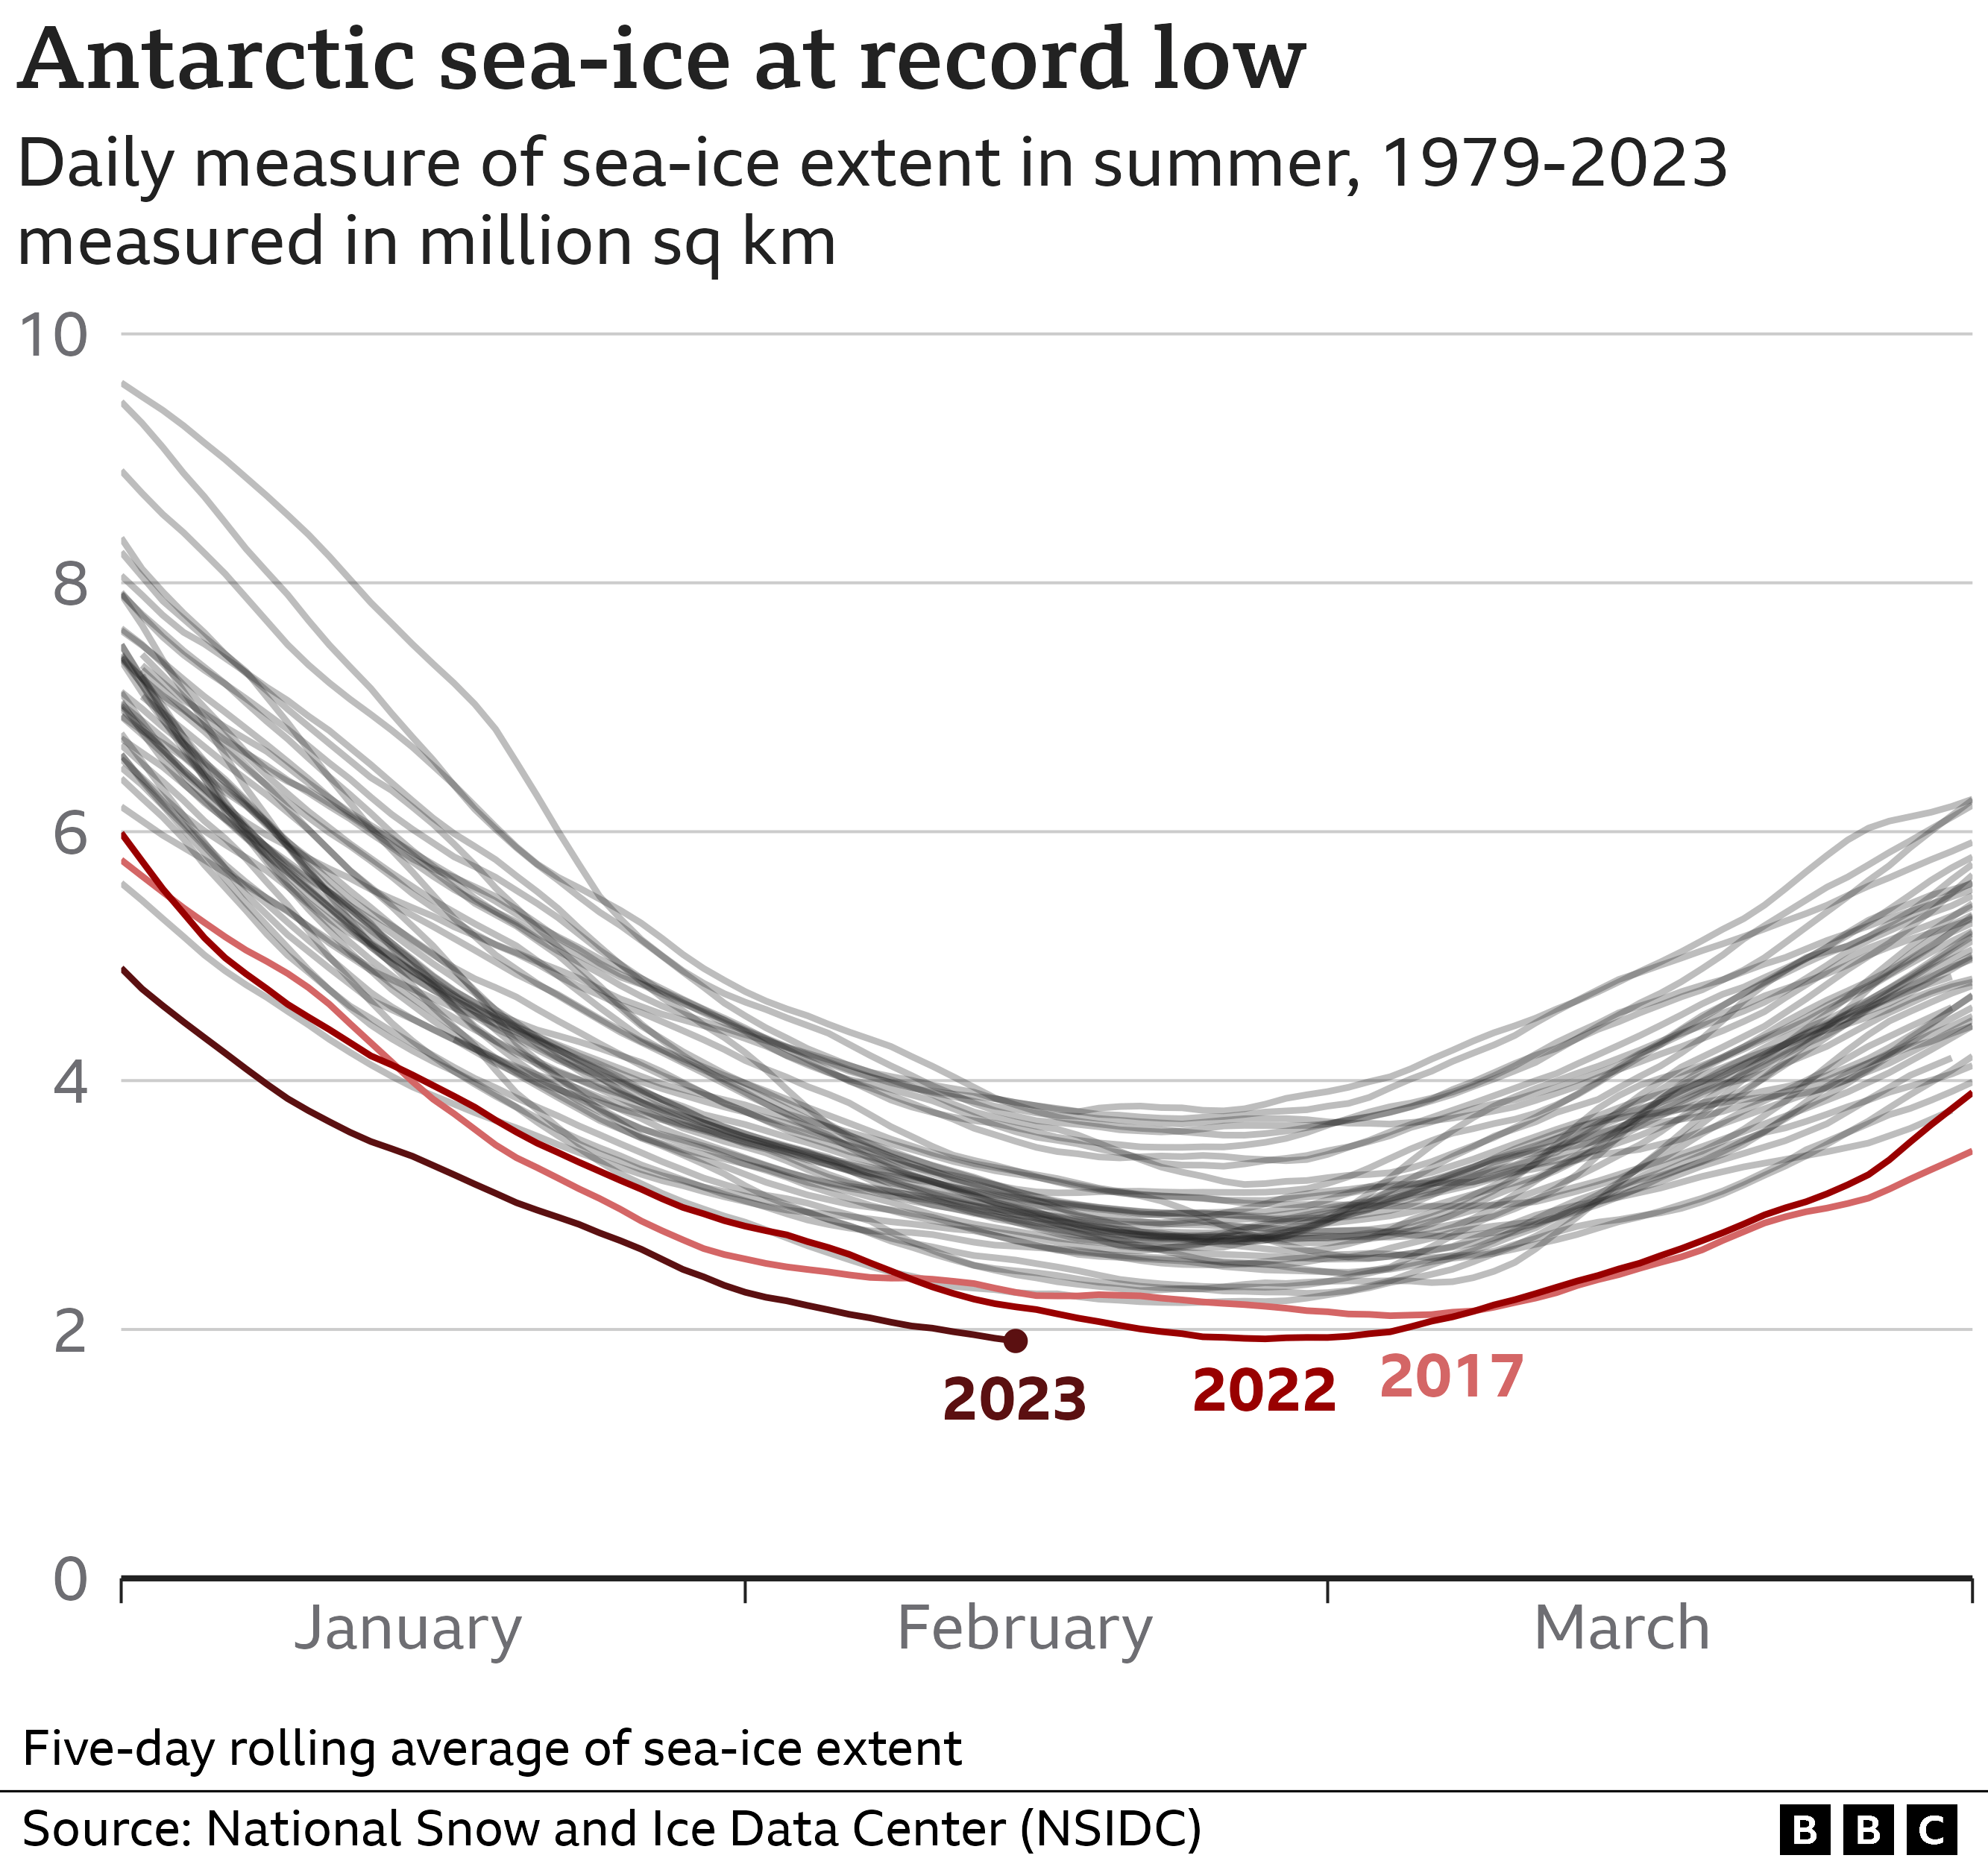 Grafico lineare che mostra la media mobile di 5 giorni dell'estensione del ghiaccio marino in Antartide con una linea per anno dal 1979. Sono stati evidenziati i tre anni più recenti: nel 2017 è stato stabilito un record all'inizio di marzo; questo è stato superato nel febbraio 2022 e di nuovo nel febbraio 2023